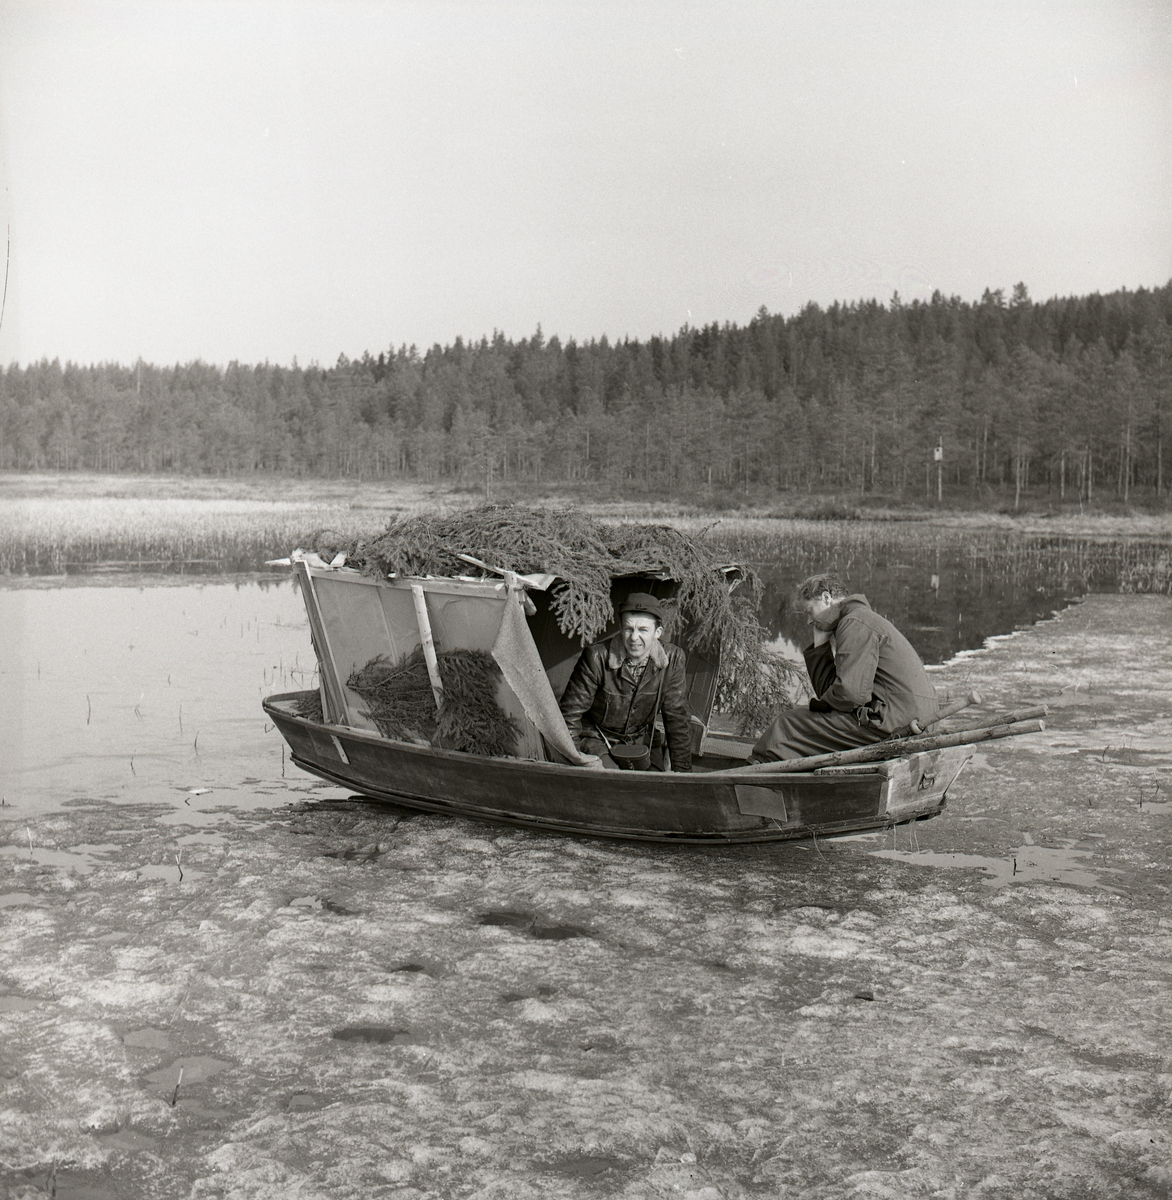 Två män befinner sig vid och i en båt med rumliknande påbyggnad, Stråsjön i april 1964. Båten ligger på en iskant med fören i vattnet.